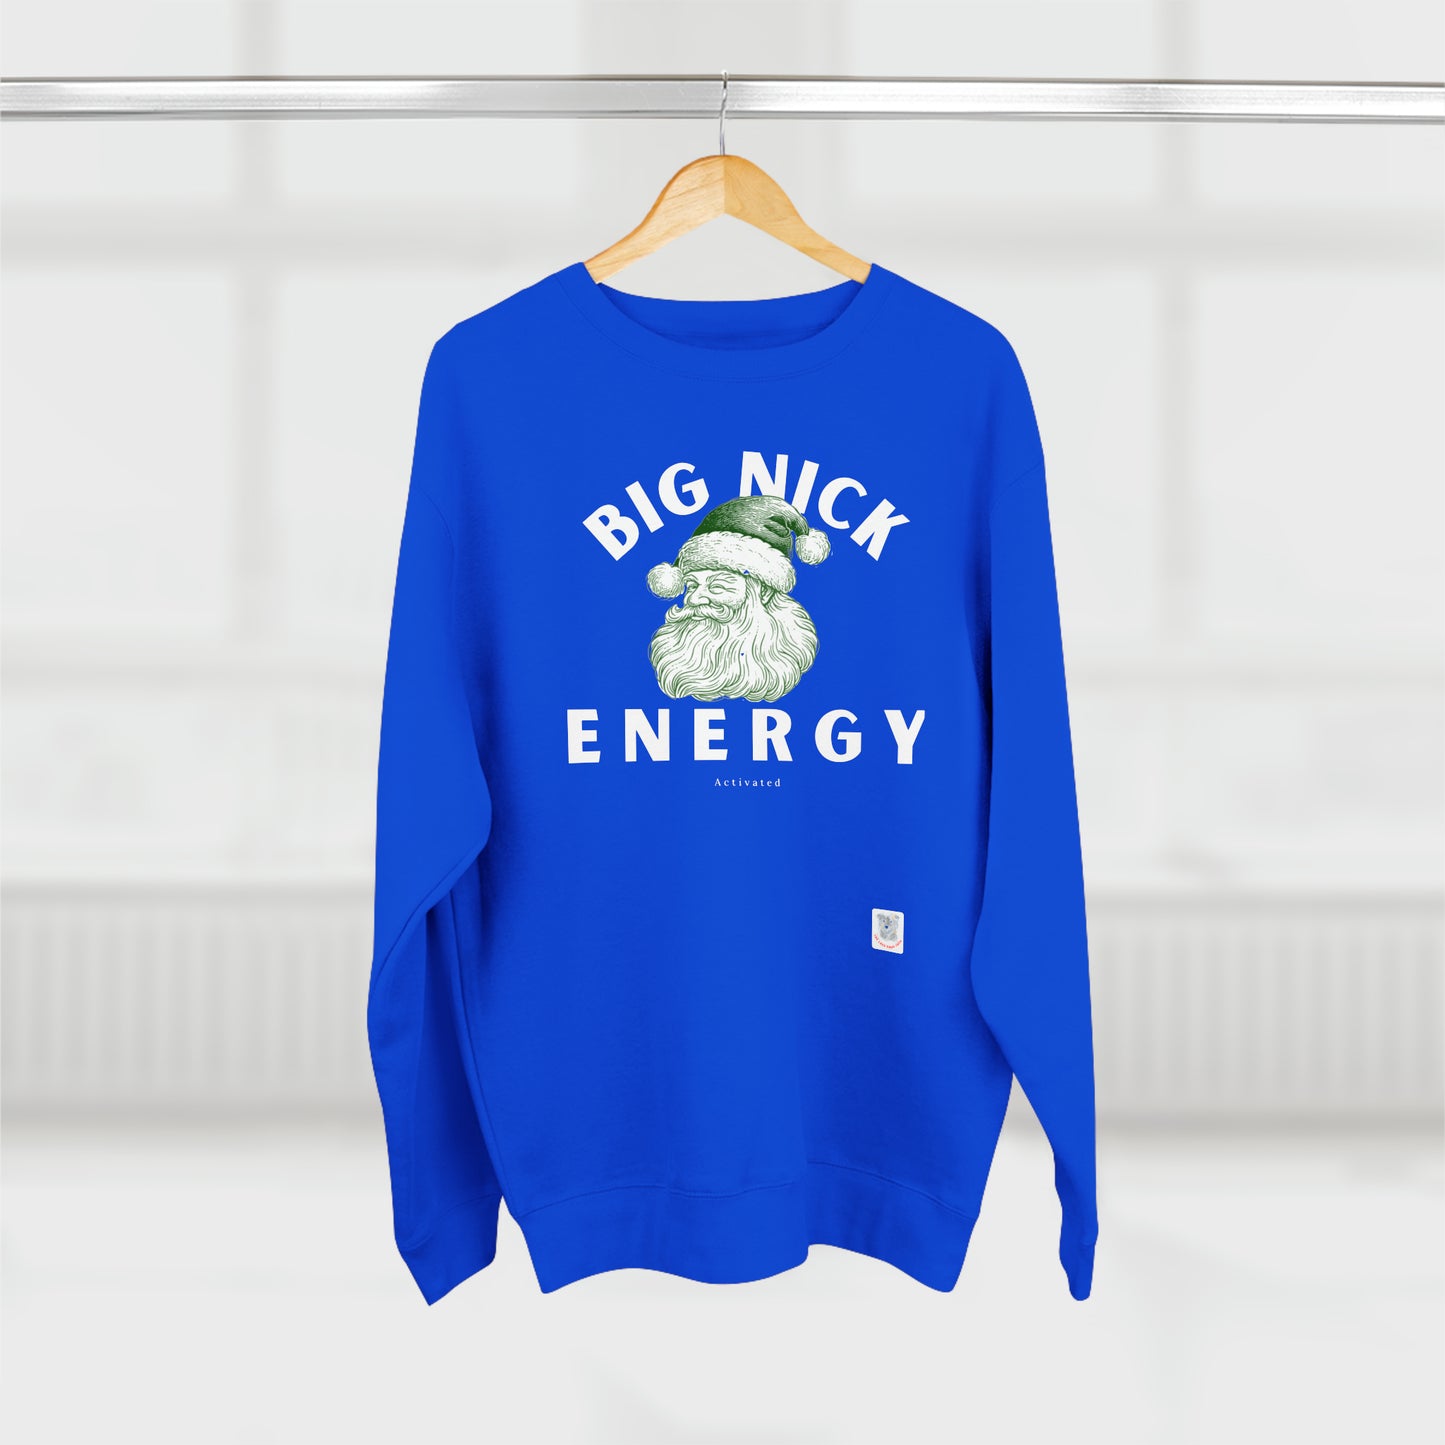 Big Nick Energy